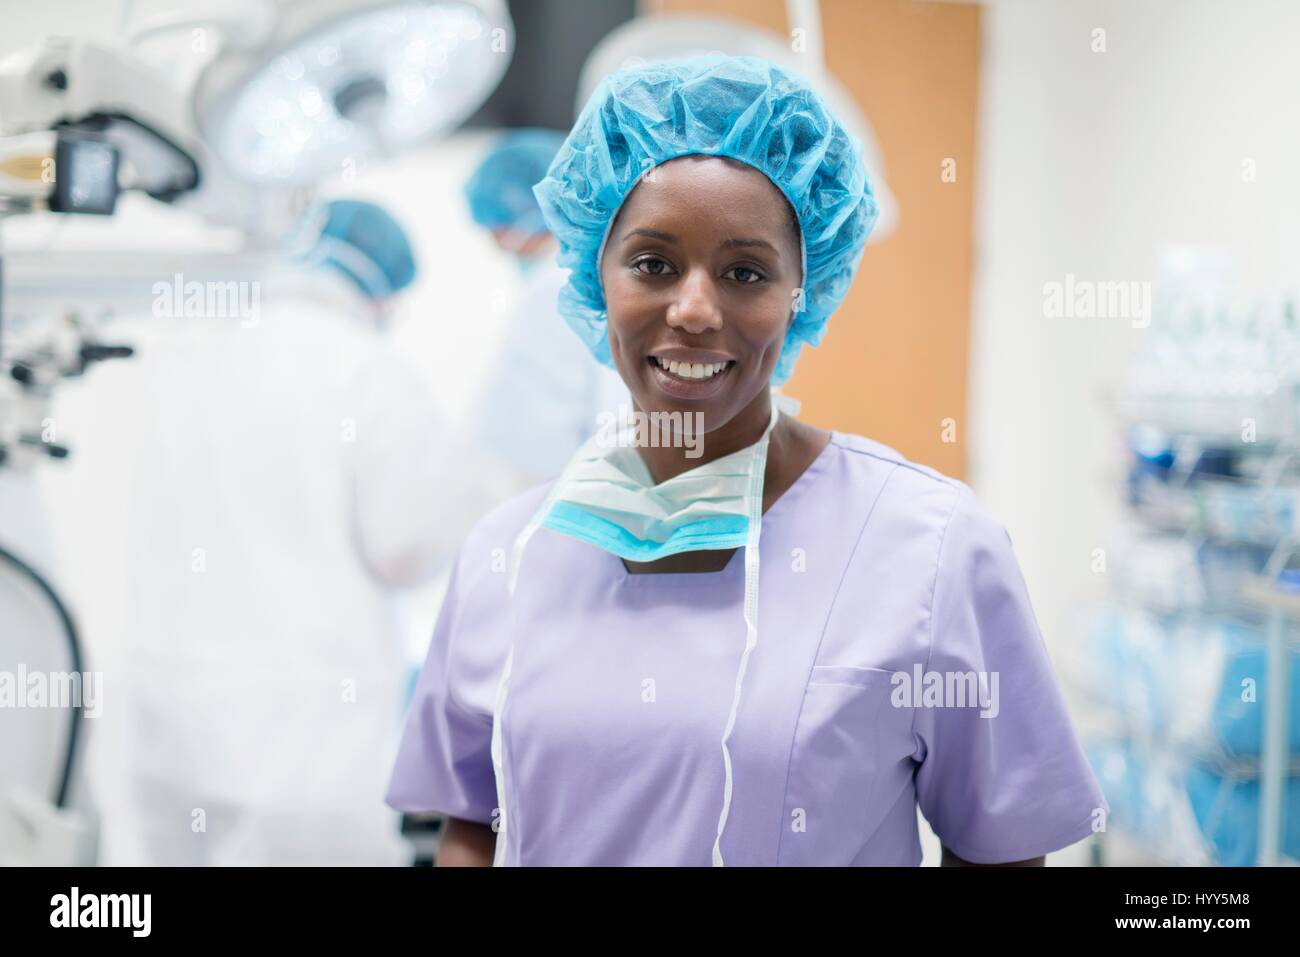 Cirujano femenino mirando a la cámara, retrato. Foto de stock